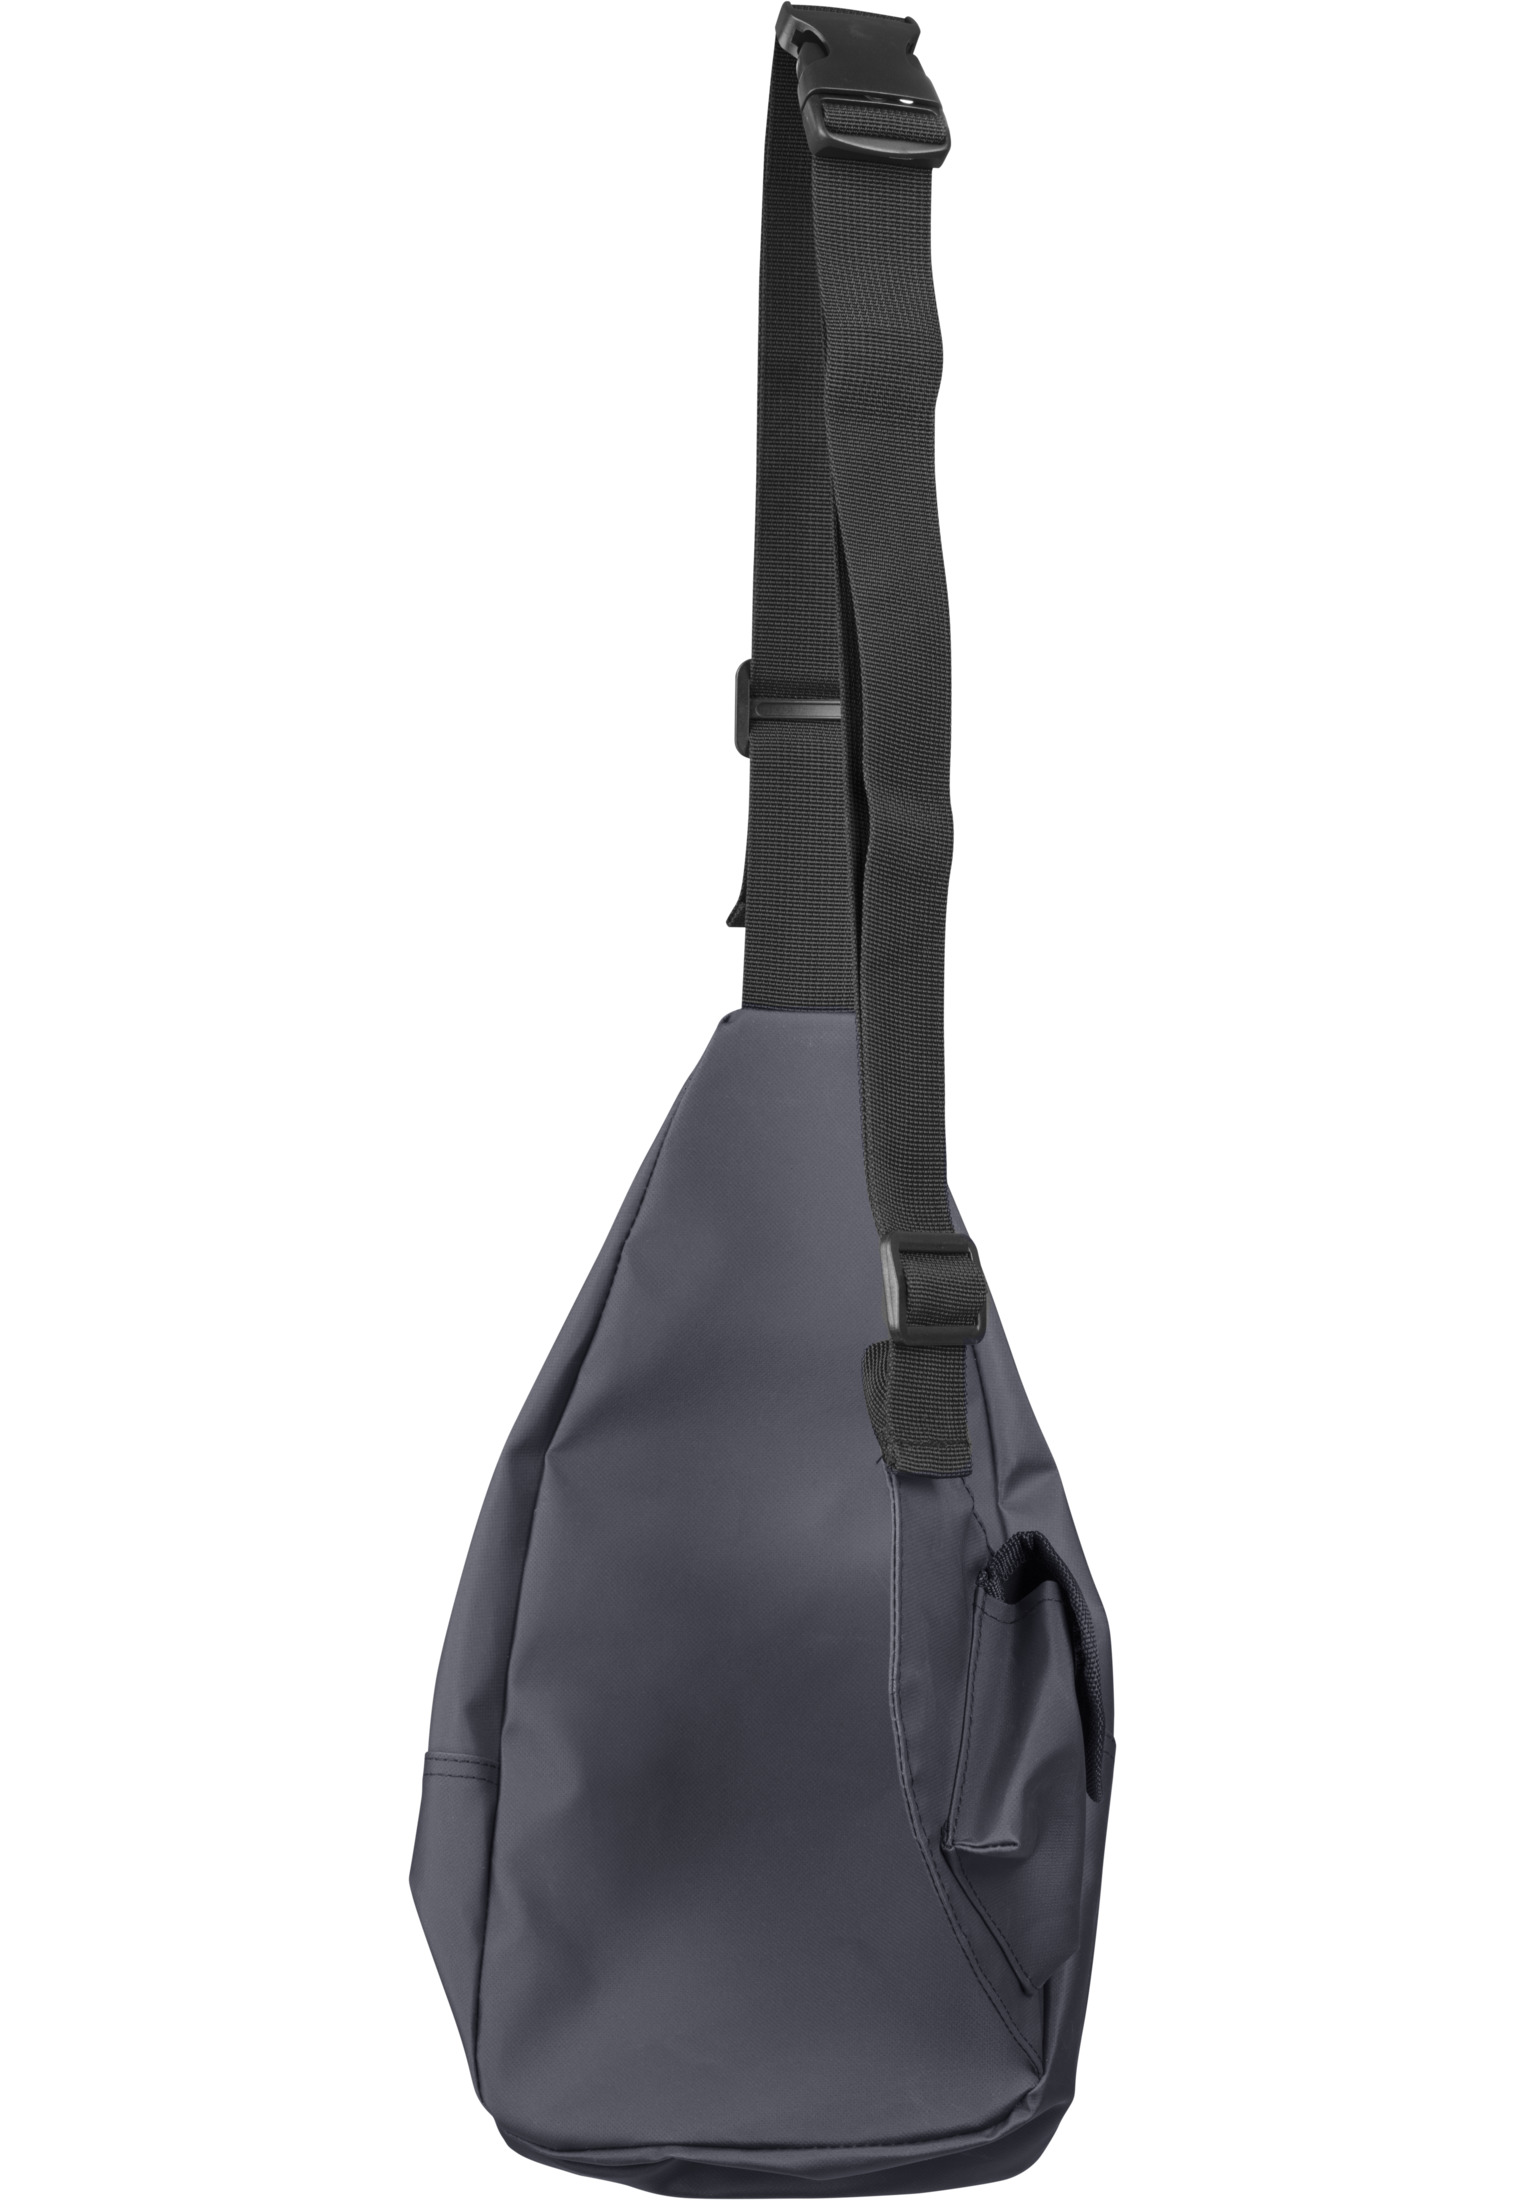 Taschen Multi Pocket Shoulder Bag in Farbe black/black